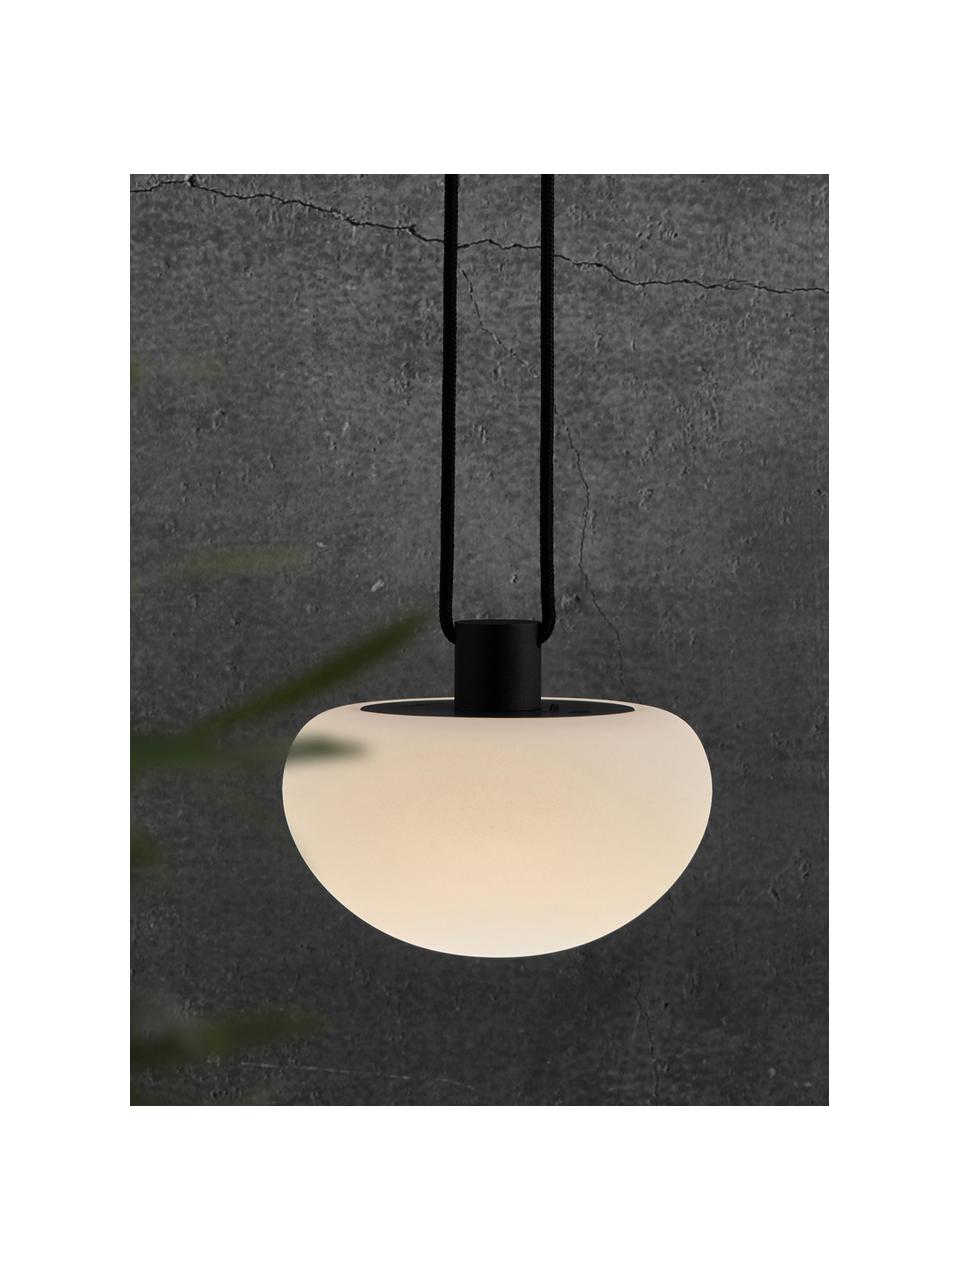 Přenosné exteriérové stmívatelné závěsné LED svítidlo Sponge, Bílá, černá, Ø 20 cm, V 16 cm